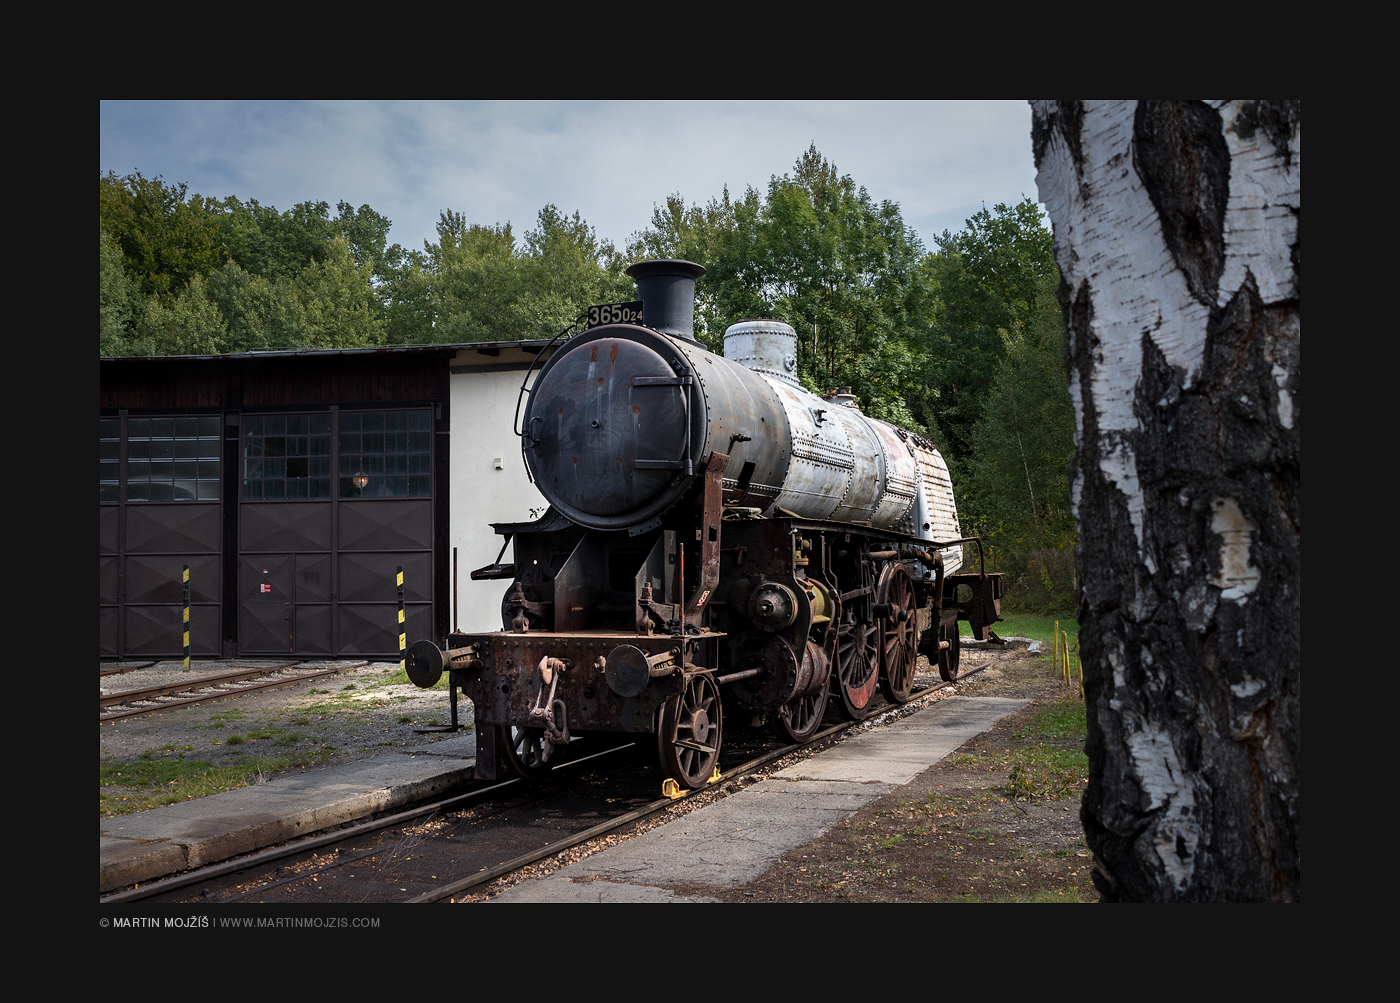 Parní lokomotiva 365 024 právě prochází rekonstrukcí. Železniční muzeum v Lužné u Rakovníka.